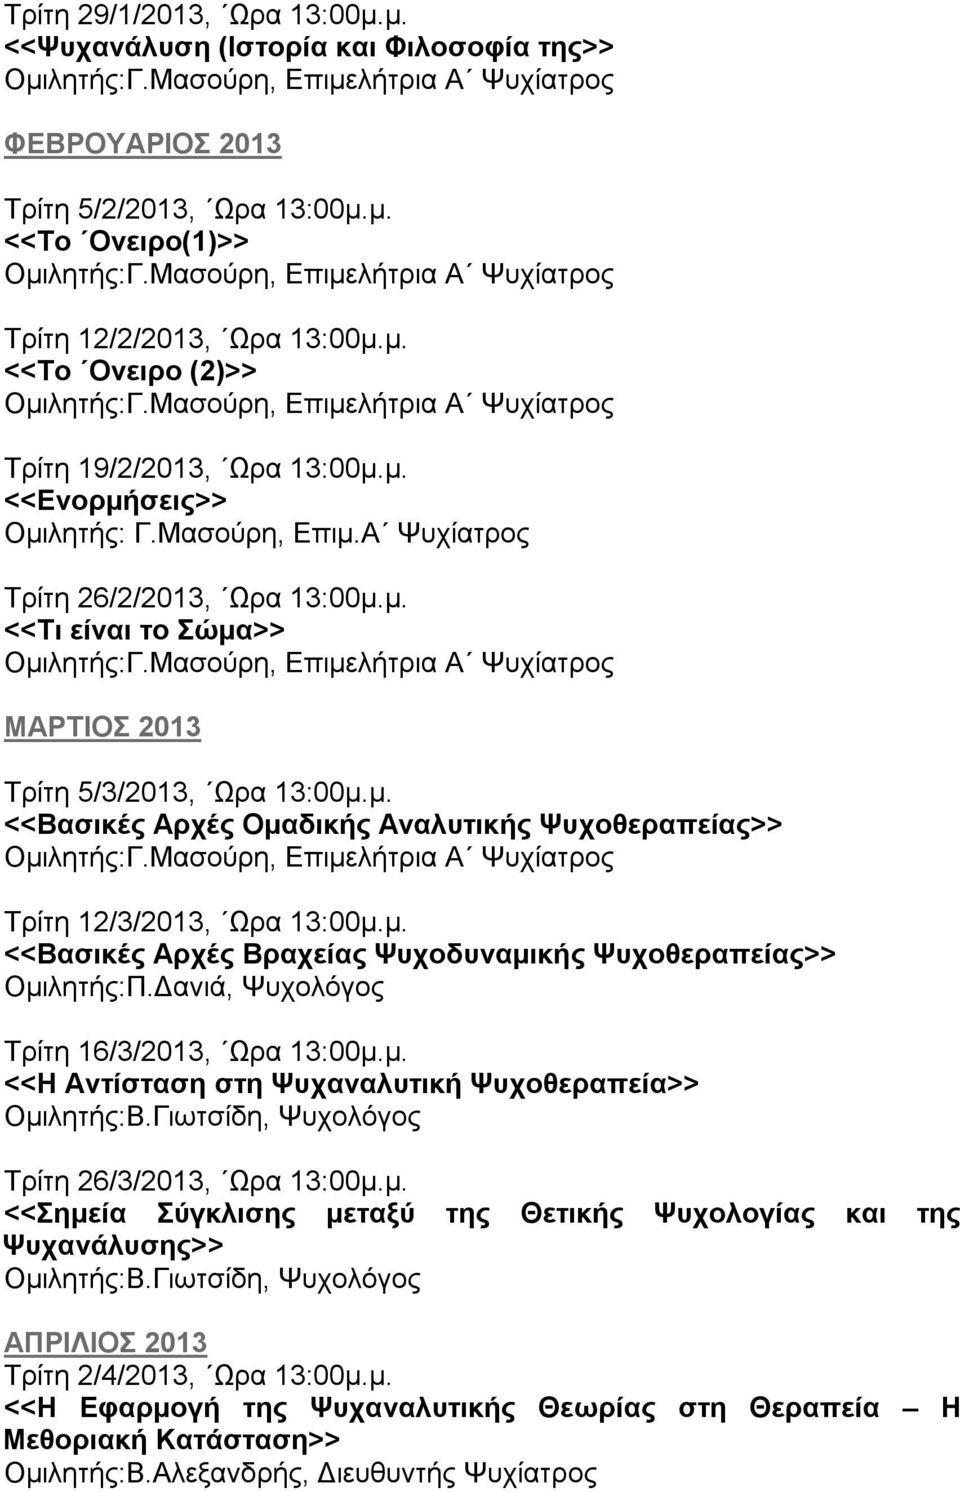 µ. <<Βασικές Αρχές Βραχείας Ψυχοδυναµικής Ψυχοθεραπείας>> Οµιλητής:Π. ανιά, Ψυχολόγος Τρίτη 16/3/2013, Ωρα 13:00µ.µ. <<Η Αντίσταση στη Ψυχαναλυτική Ψυχοθεραπεία>> Οµιλητής:Β.